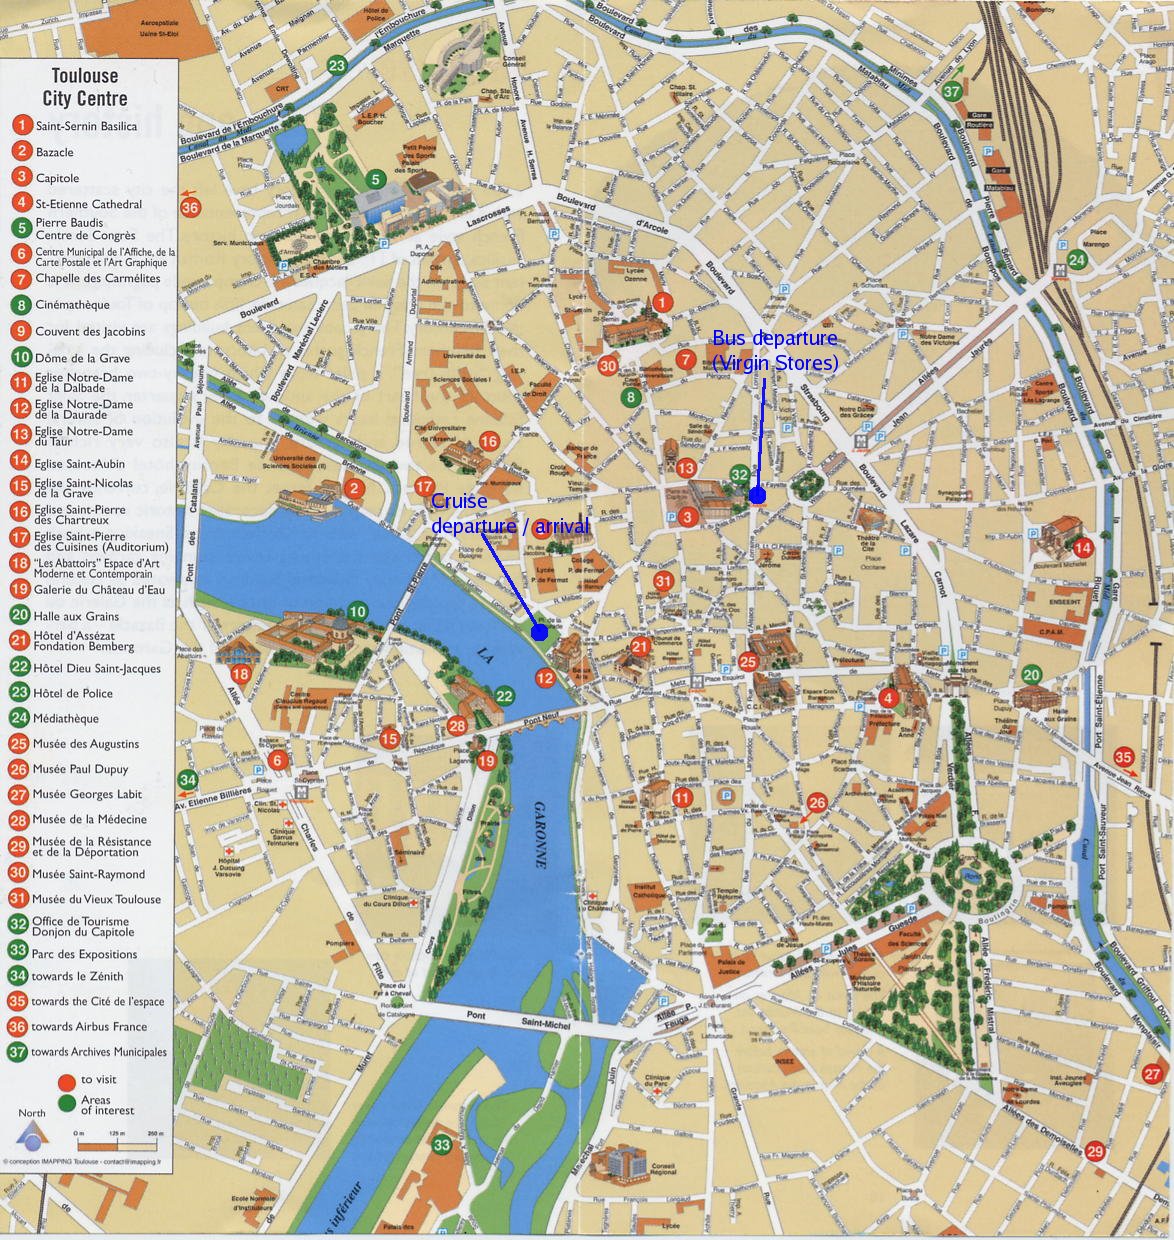 Toulouse transportation plan